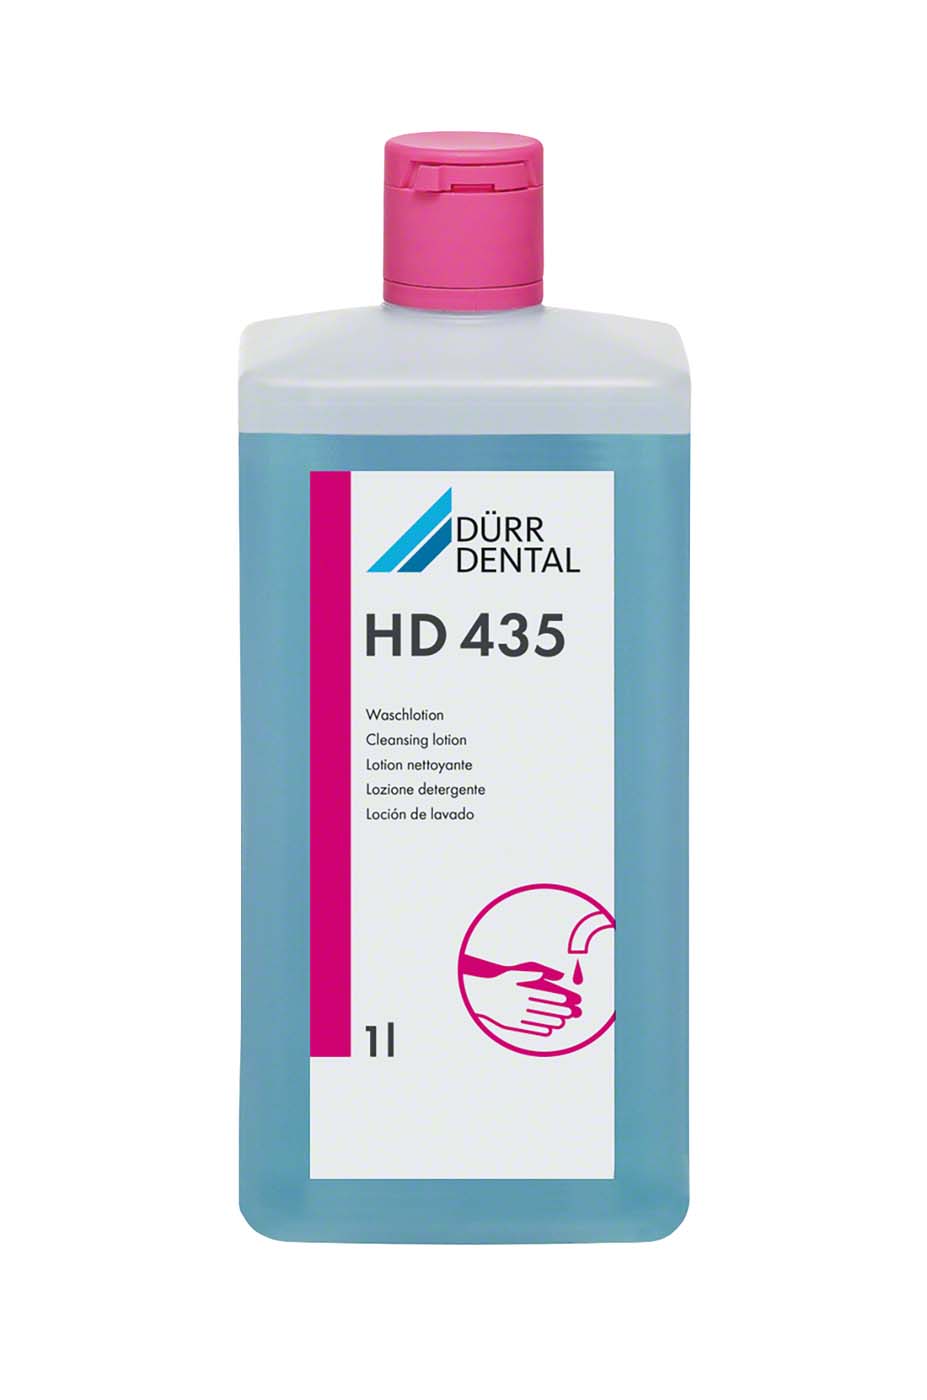 HD 435 Waschlotion Dürr Dental